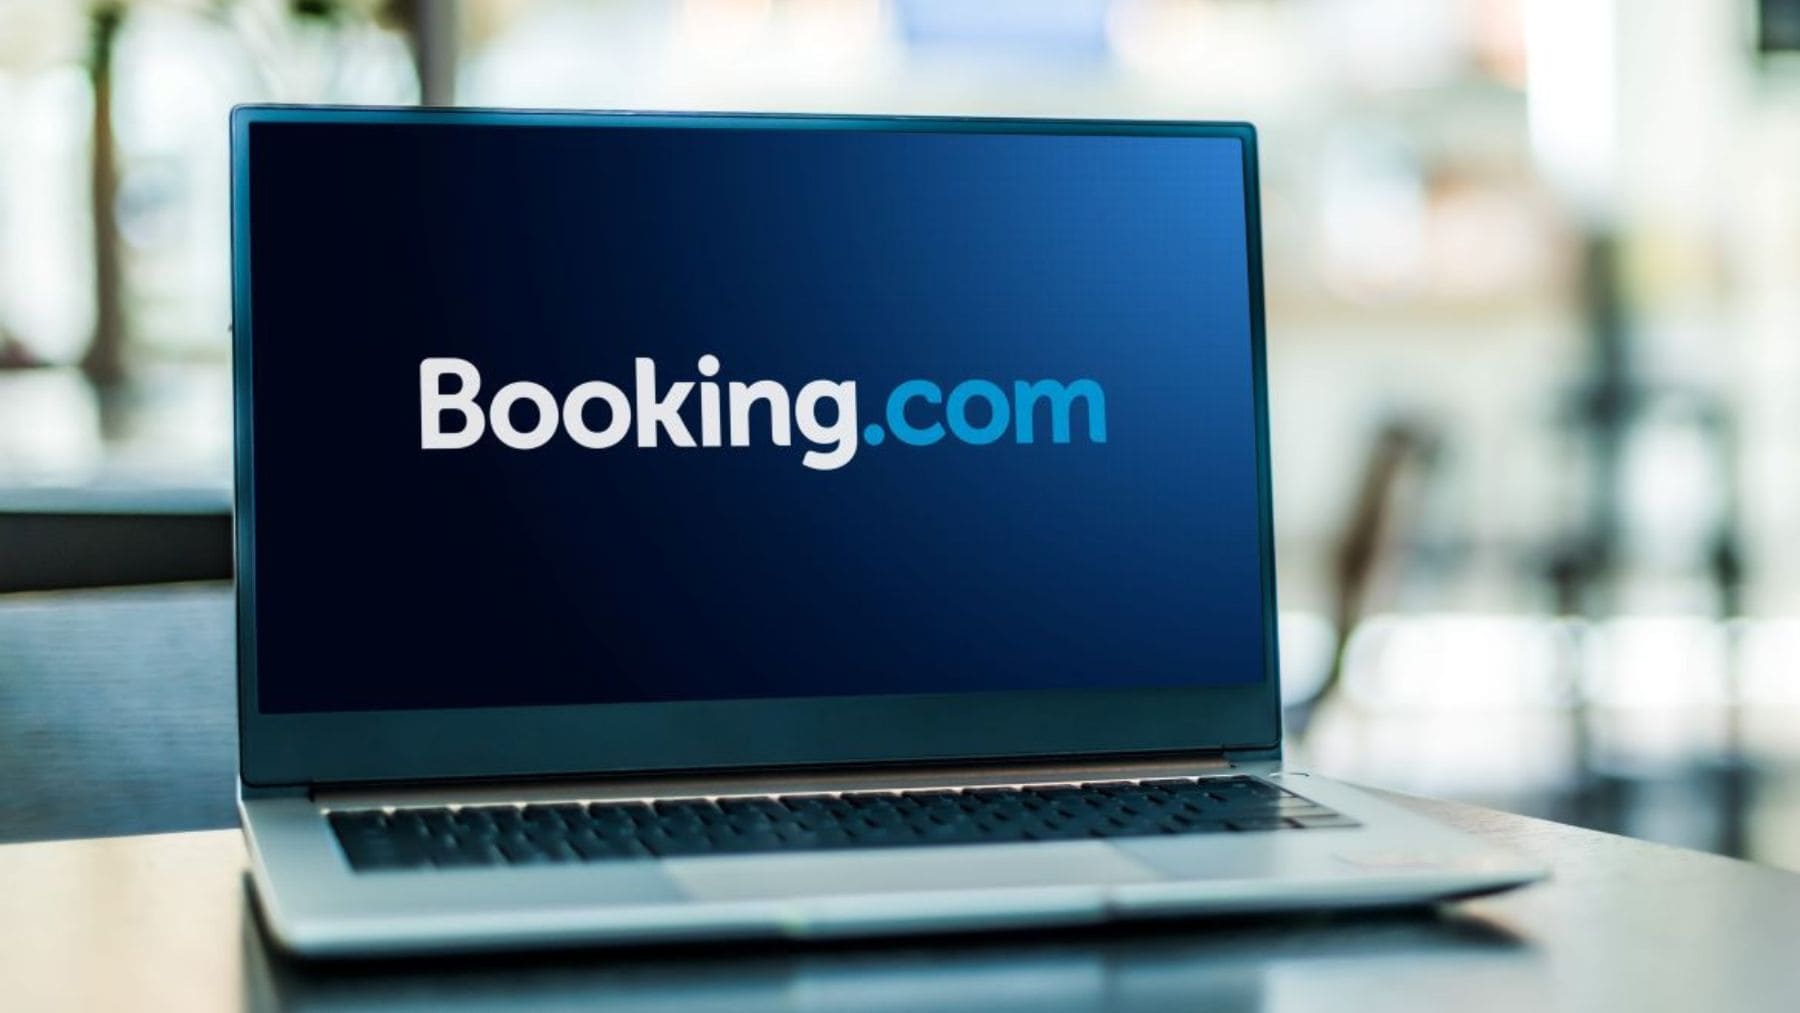 Cómo encontrar hoteles baratos en Booking.com